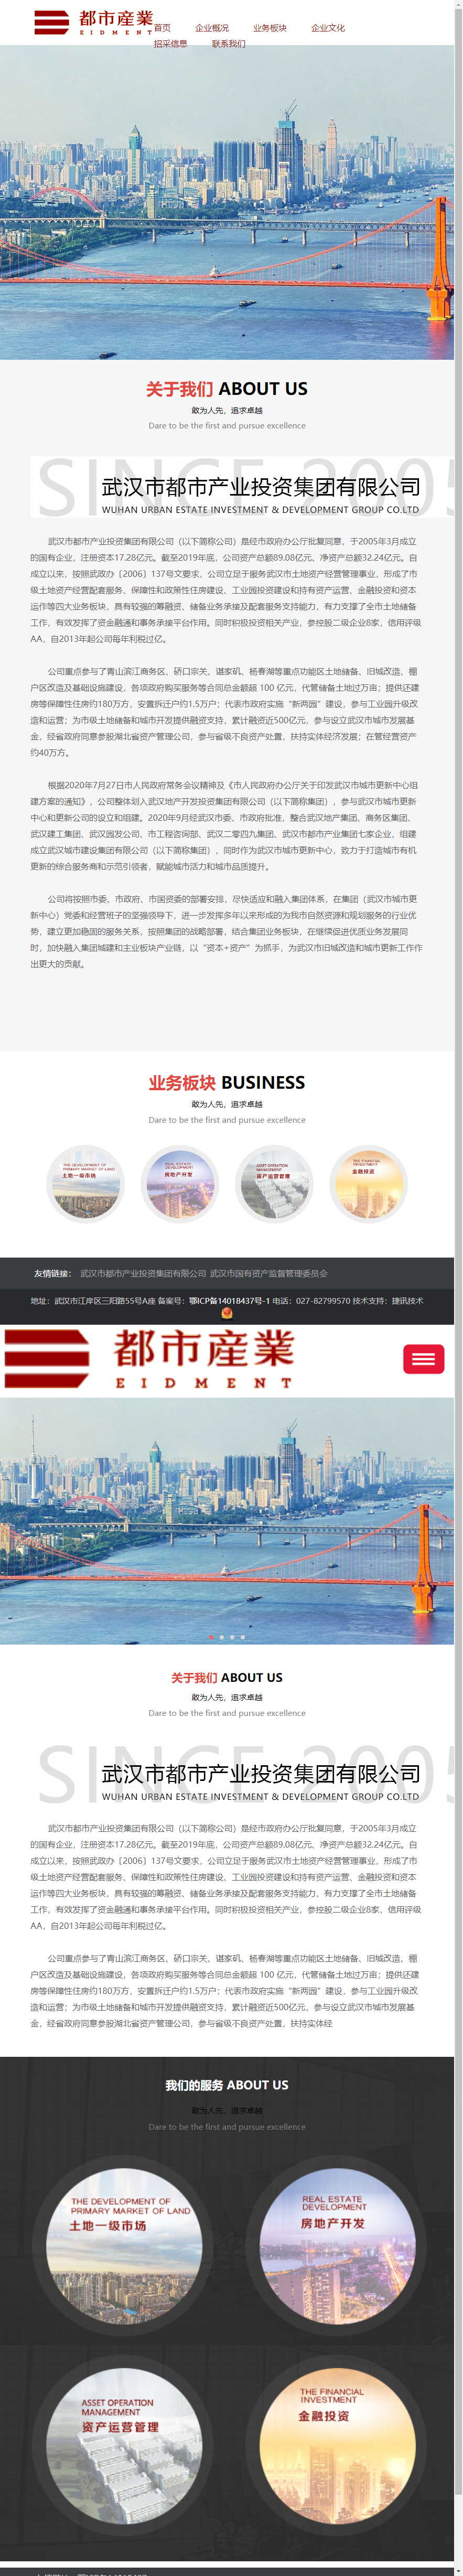 武汉市都市产业投资集团有限公司网站案例